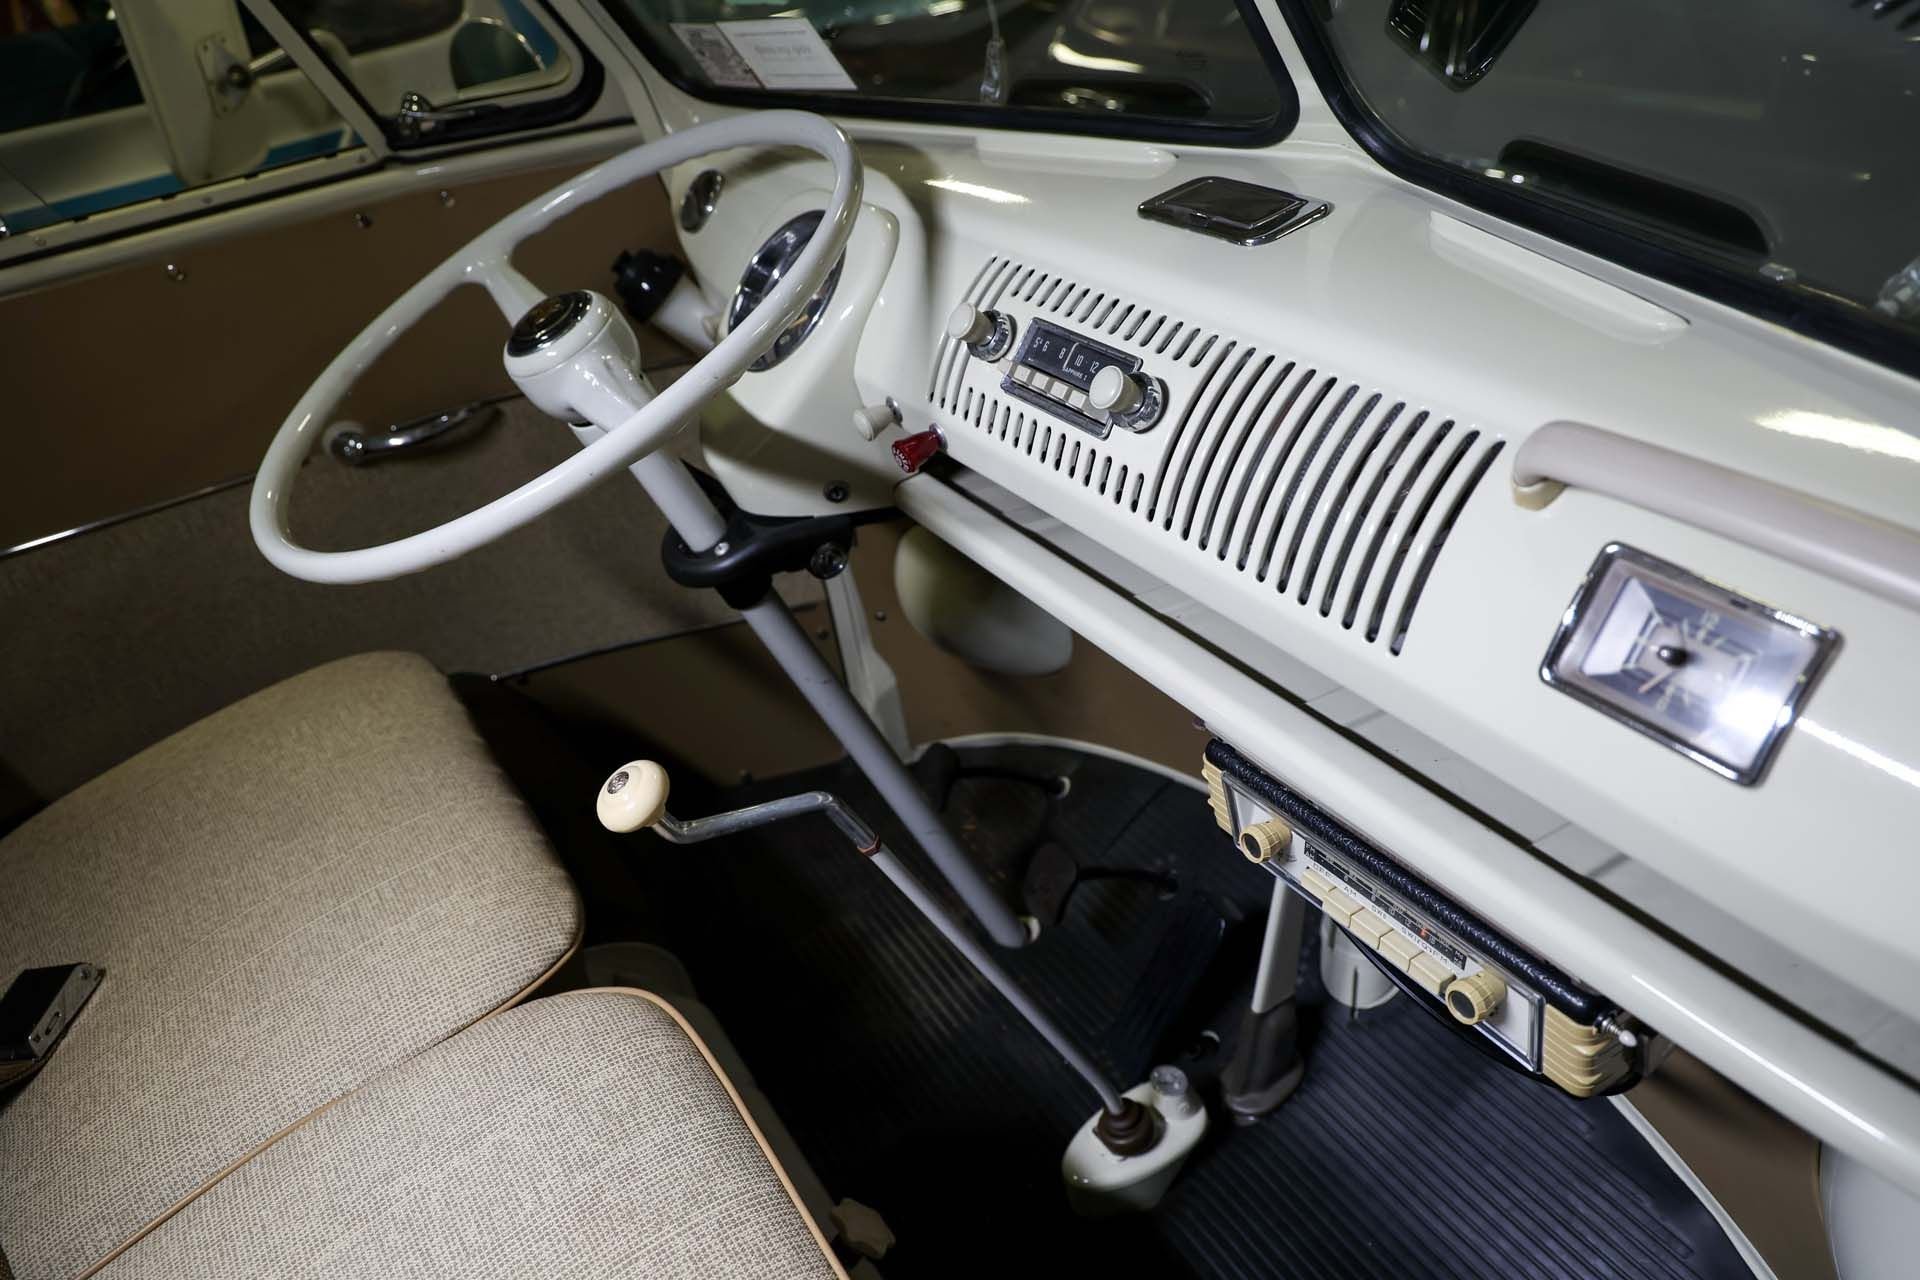 Broad Arrow Auctions | 1966 Volkswagen Type 2 '21-Window' Deluxe Microbus